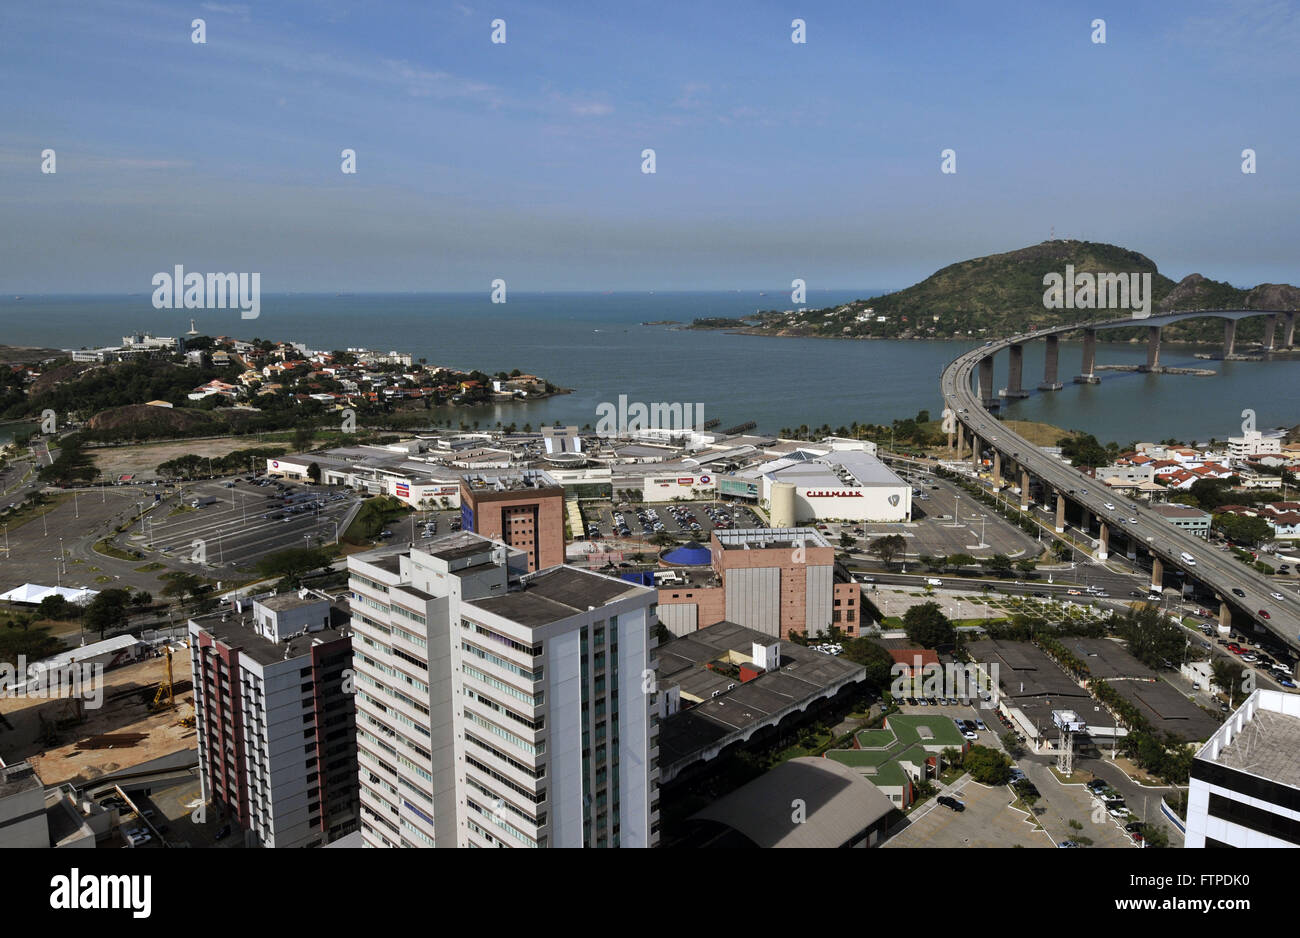 Praia do Canto città di Vitoria - Ilha do Boi in basso a sinistra Foto Stock